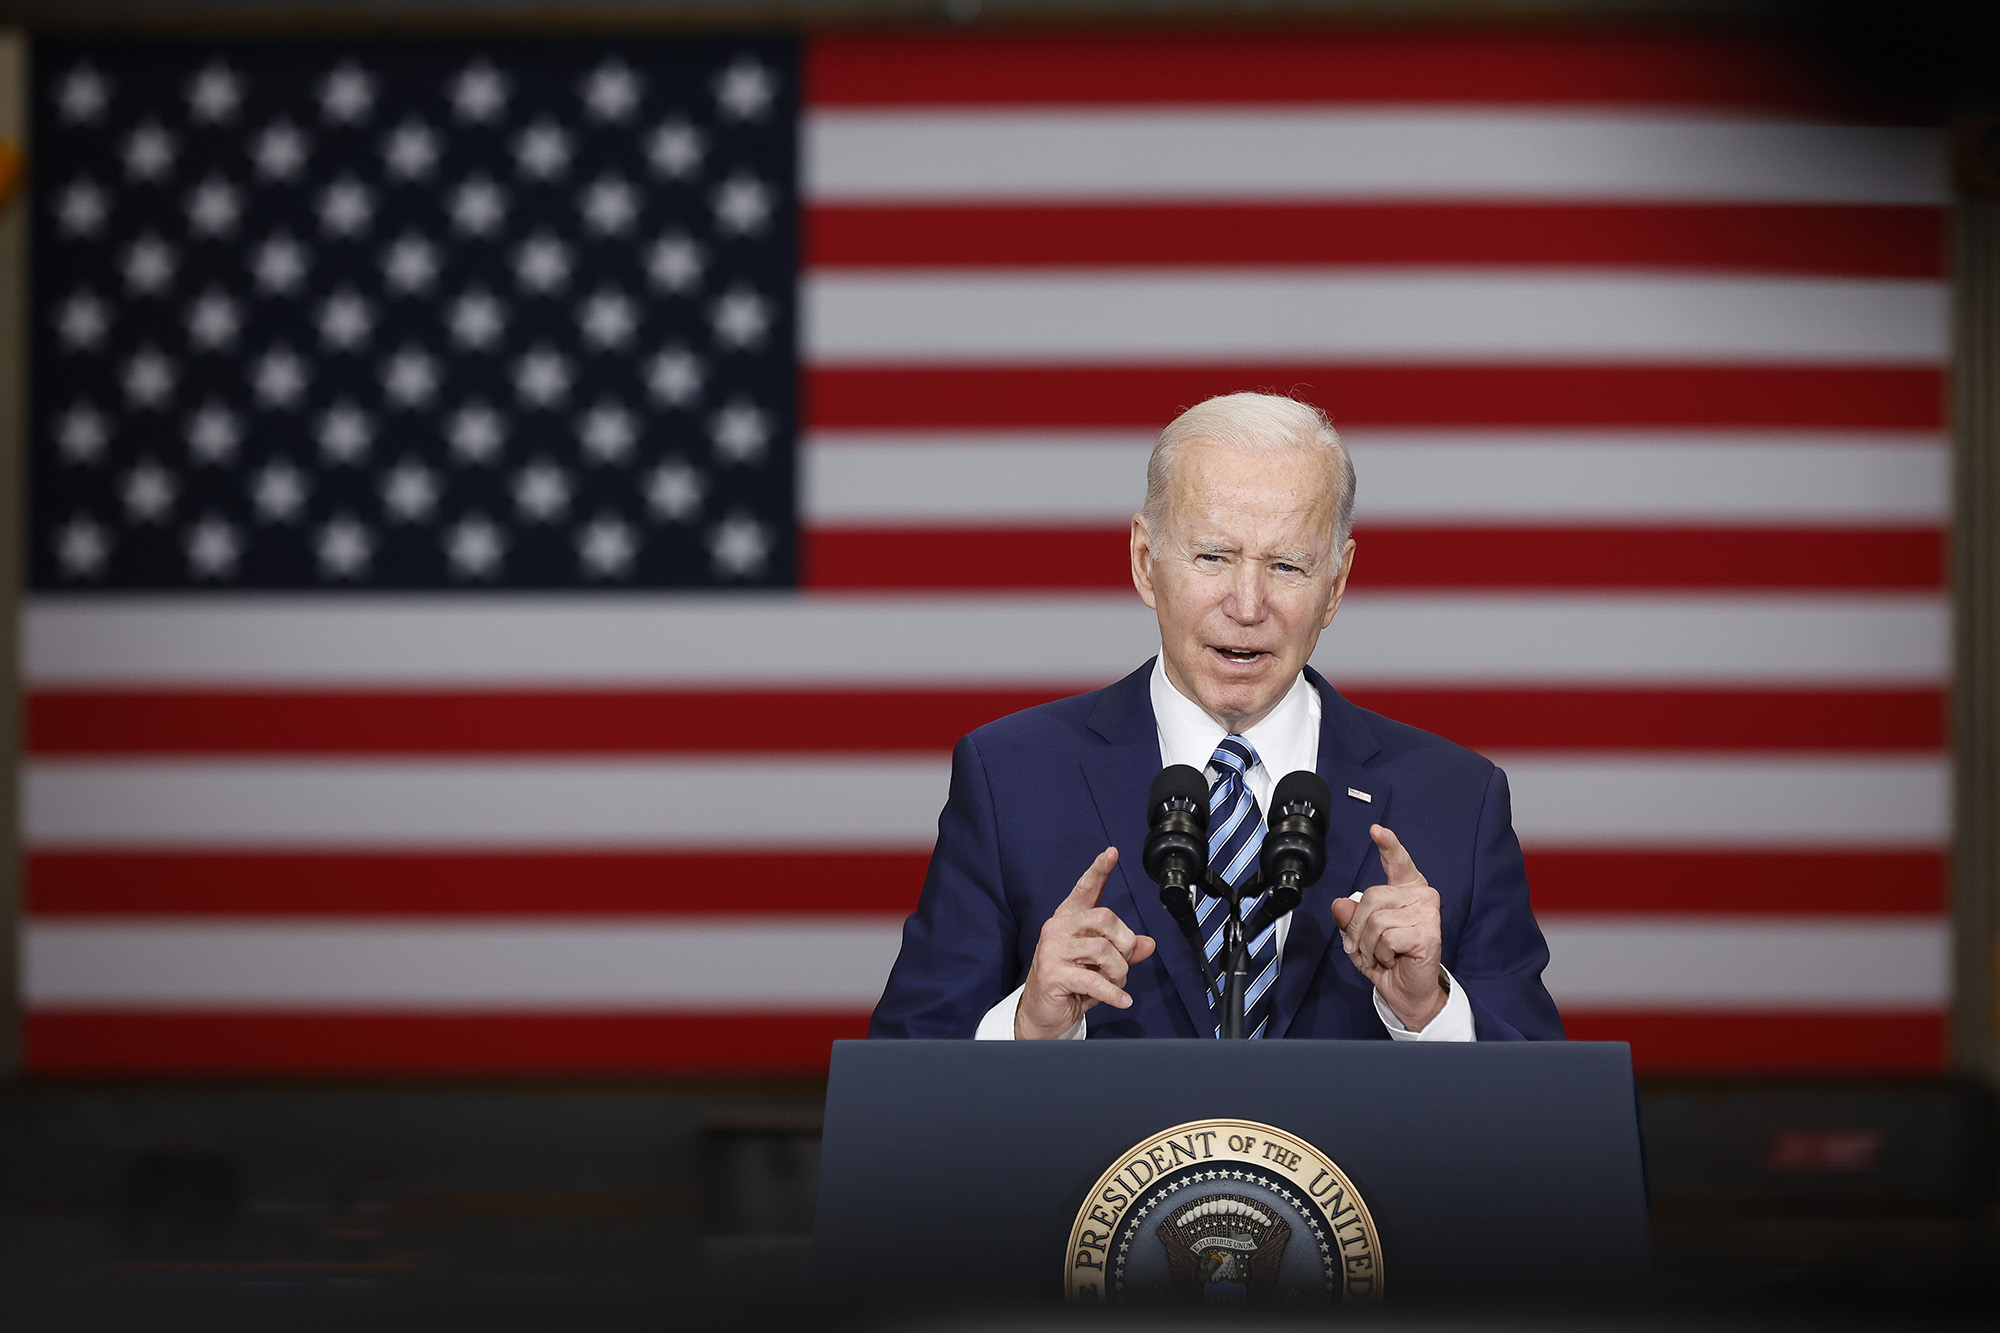 Biden Ukraine: Sau cuộc bầu cử tranh cử tổng thống năm 2020, ông Joe Biden đã được đắc cử làm Tổng thống của Hoa Kỳ. Trong năm 2024, Tổng thống Biden sẽ tới thăm Ukraine và sẽ có những cuộc đối thoại quan trọng về chính trị và kinh tế giữa hai đất nước. Điều này sẽ mở ra nhiều cơ hội mới cho Ukraine và quan hệ giữa hai nước.